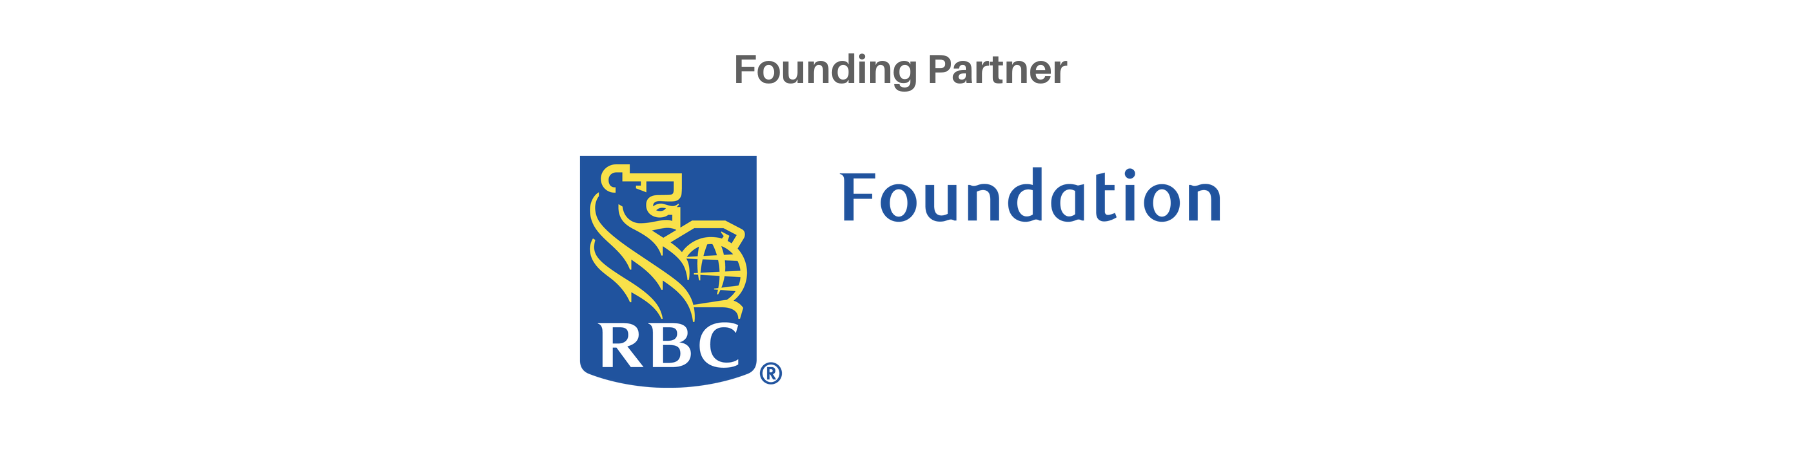 Image: Founding partner, RBC Foundation